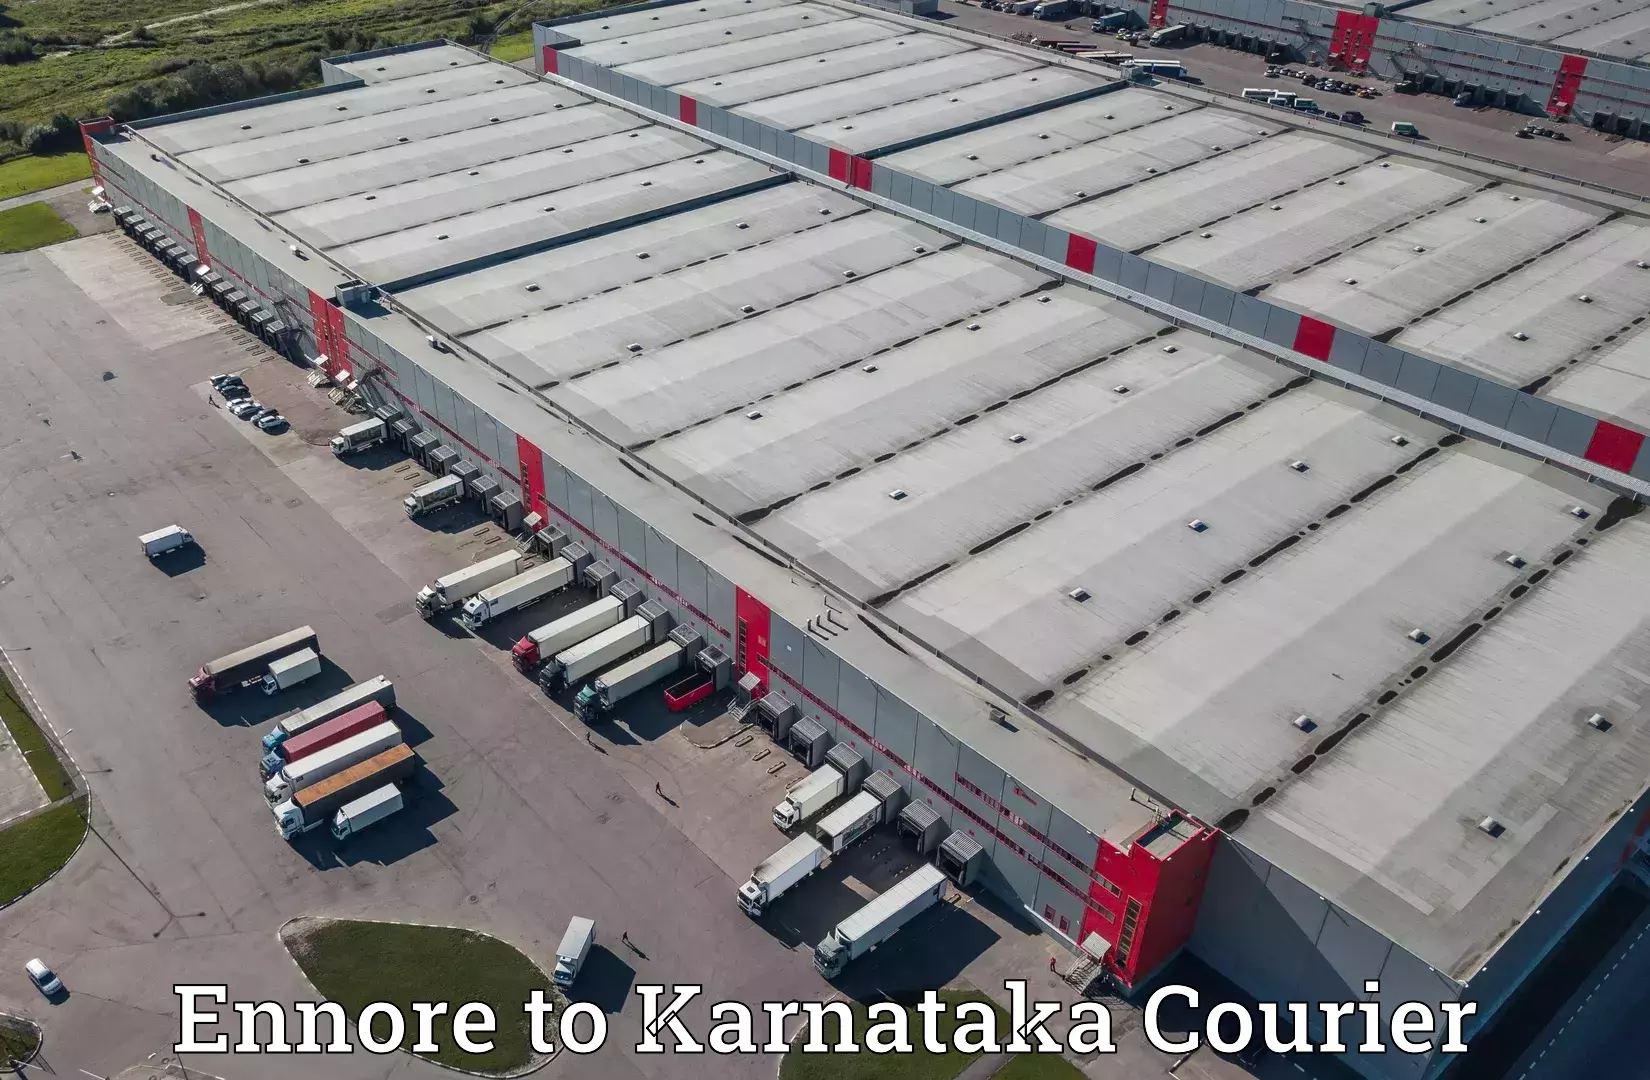 High-performance logistics Ennore to Kanjarakatte